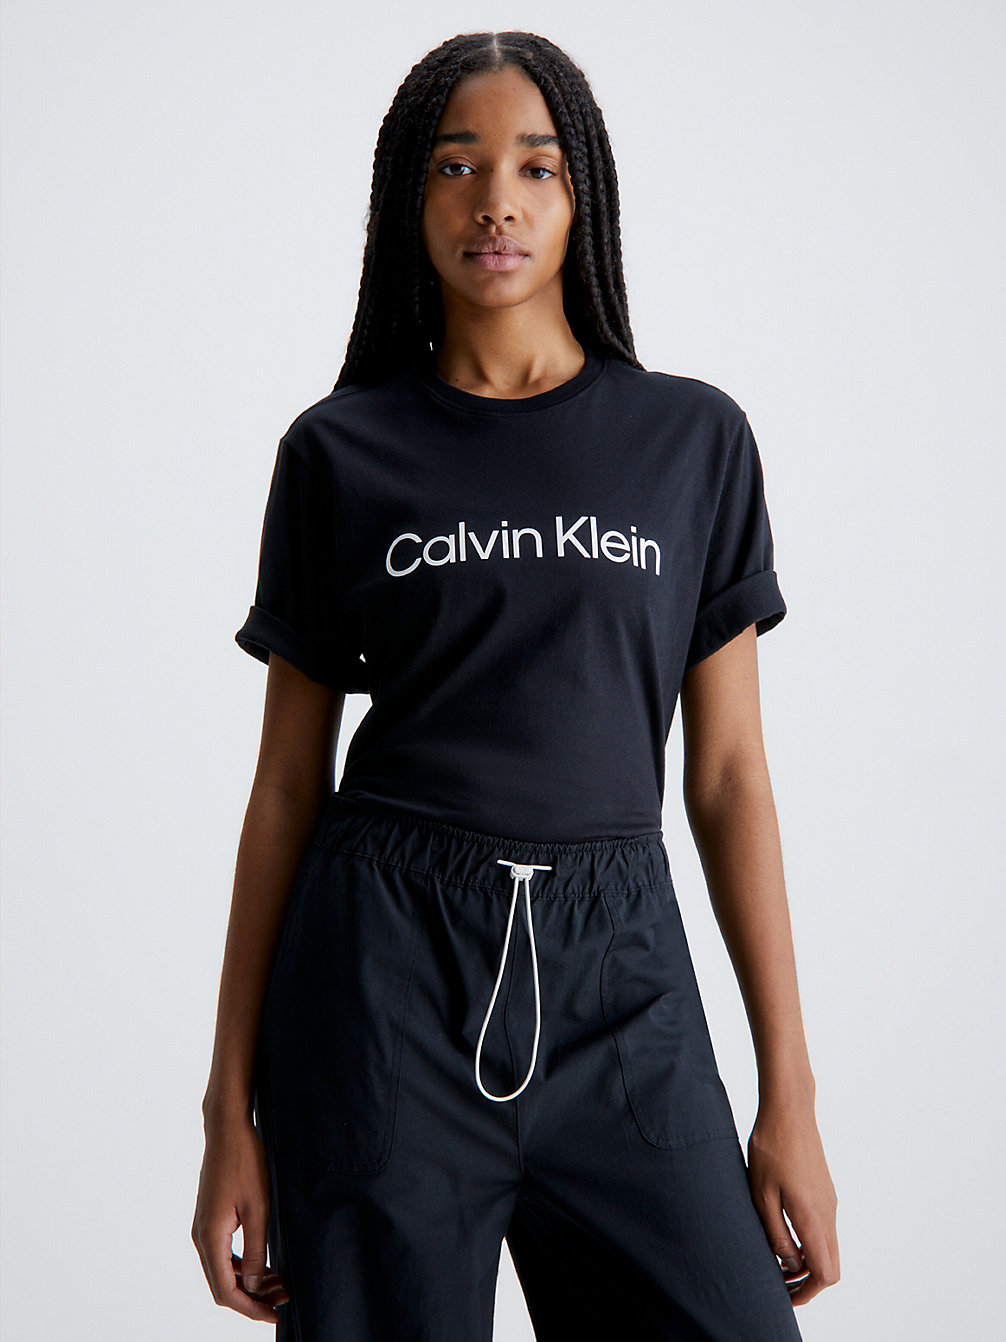 BLACK BEAUTY > Weiches Gym-T-Shirt > undefined Damen - Calvin Klein